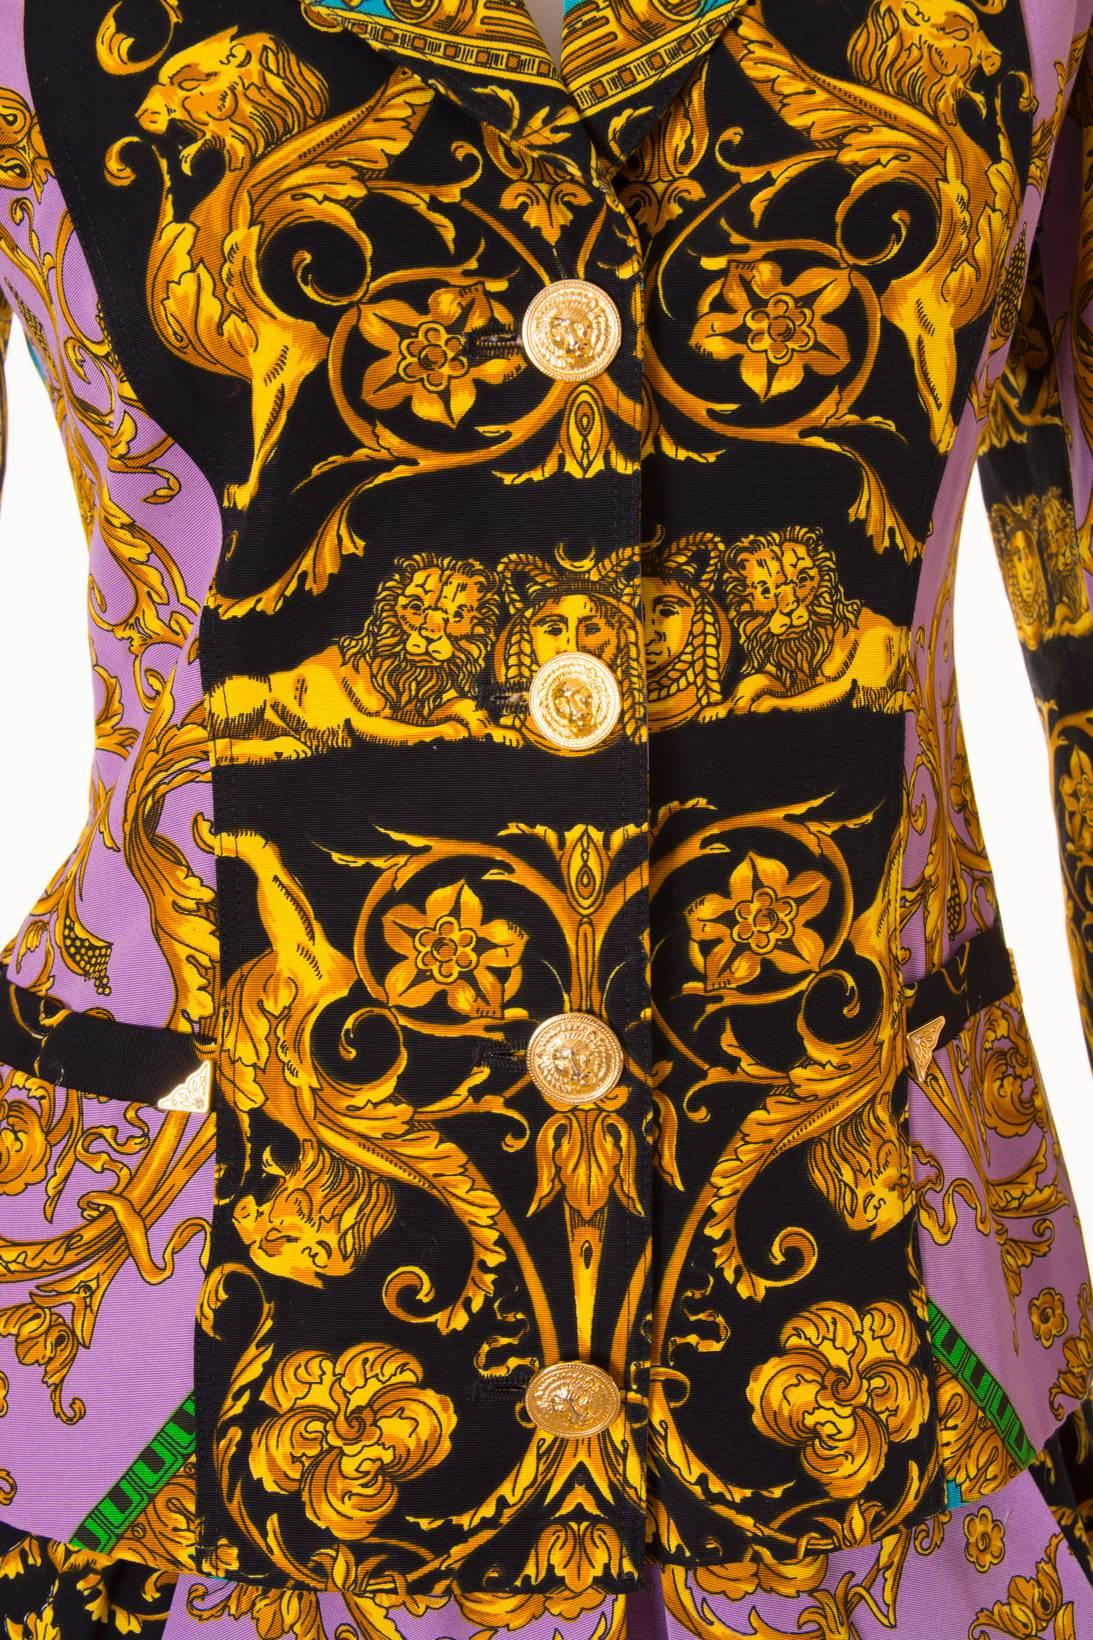 Versus Gianni Versace Baroque Skirt Suit 5